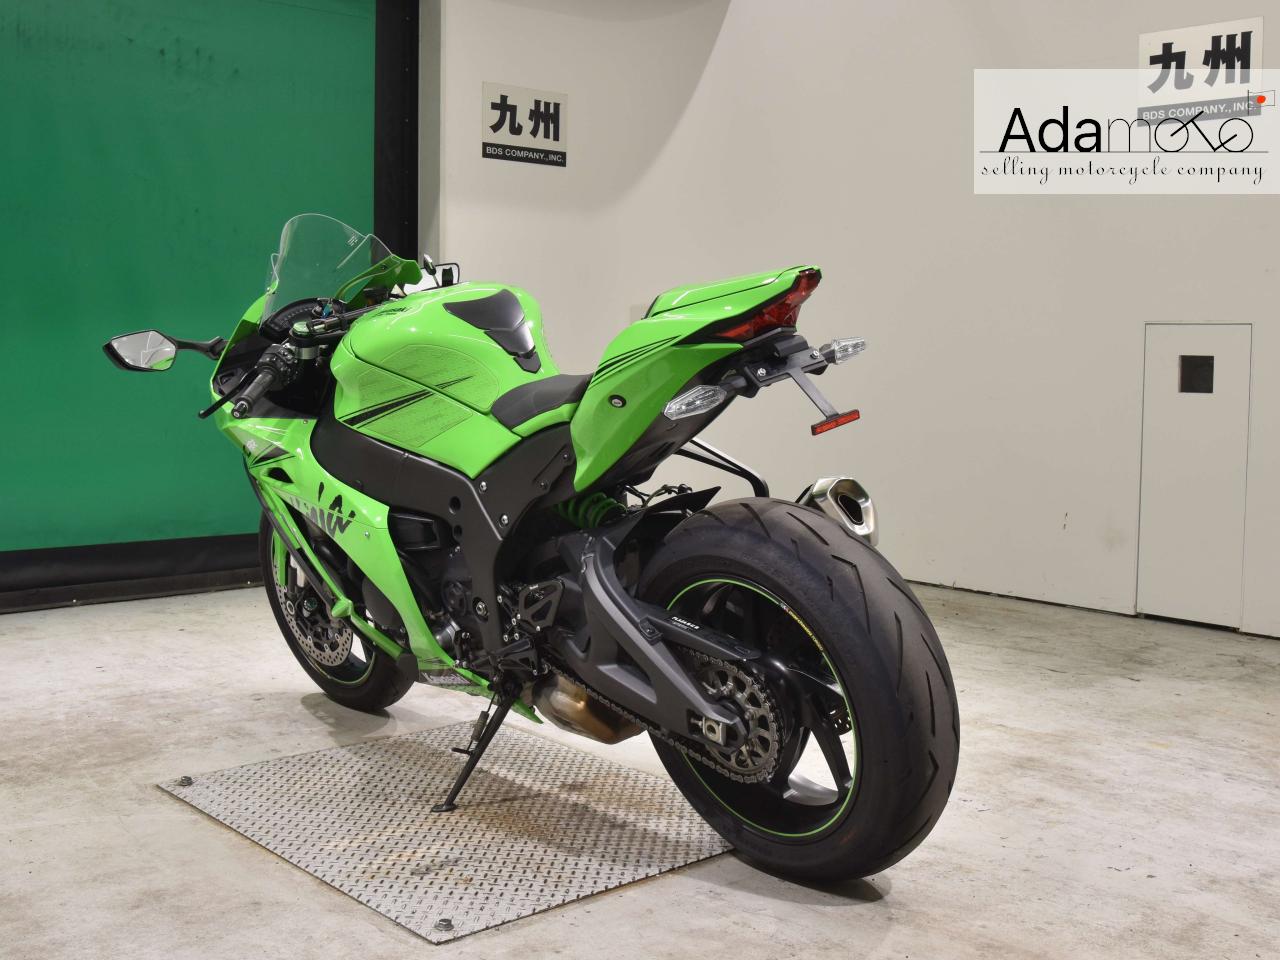 Kawasaki ZX 10RR - Adamoto - Motorcycles from Japan